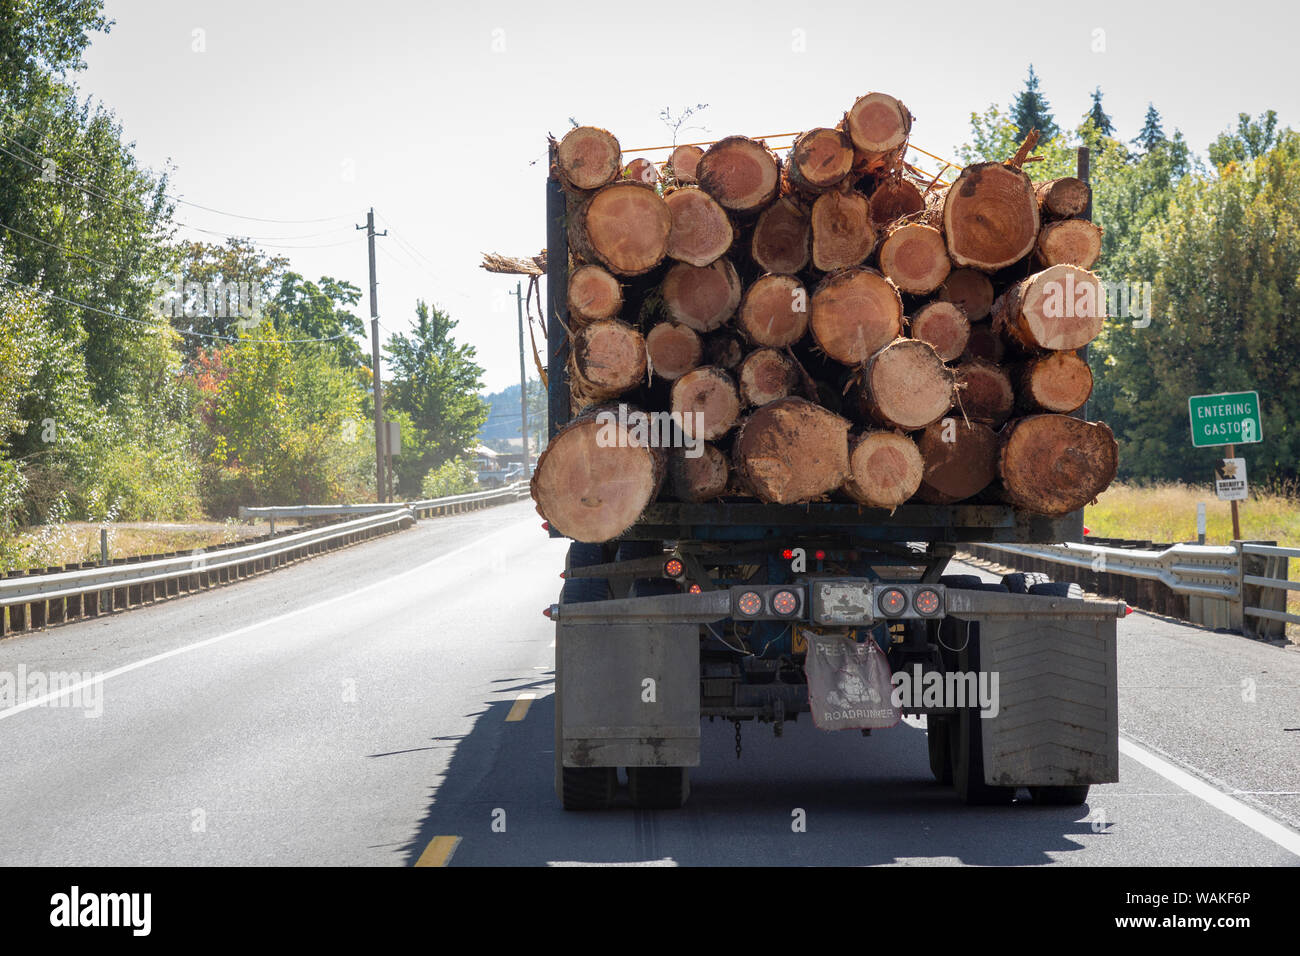 USA, Oregon, Gaston. Camión lleno de troncos. Crédito: Wendy Kaveney Jaynes / Galería / DanitaDelimont.com Foto de stock